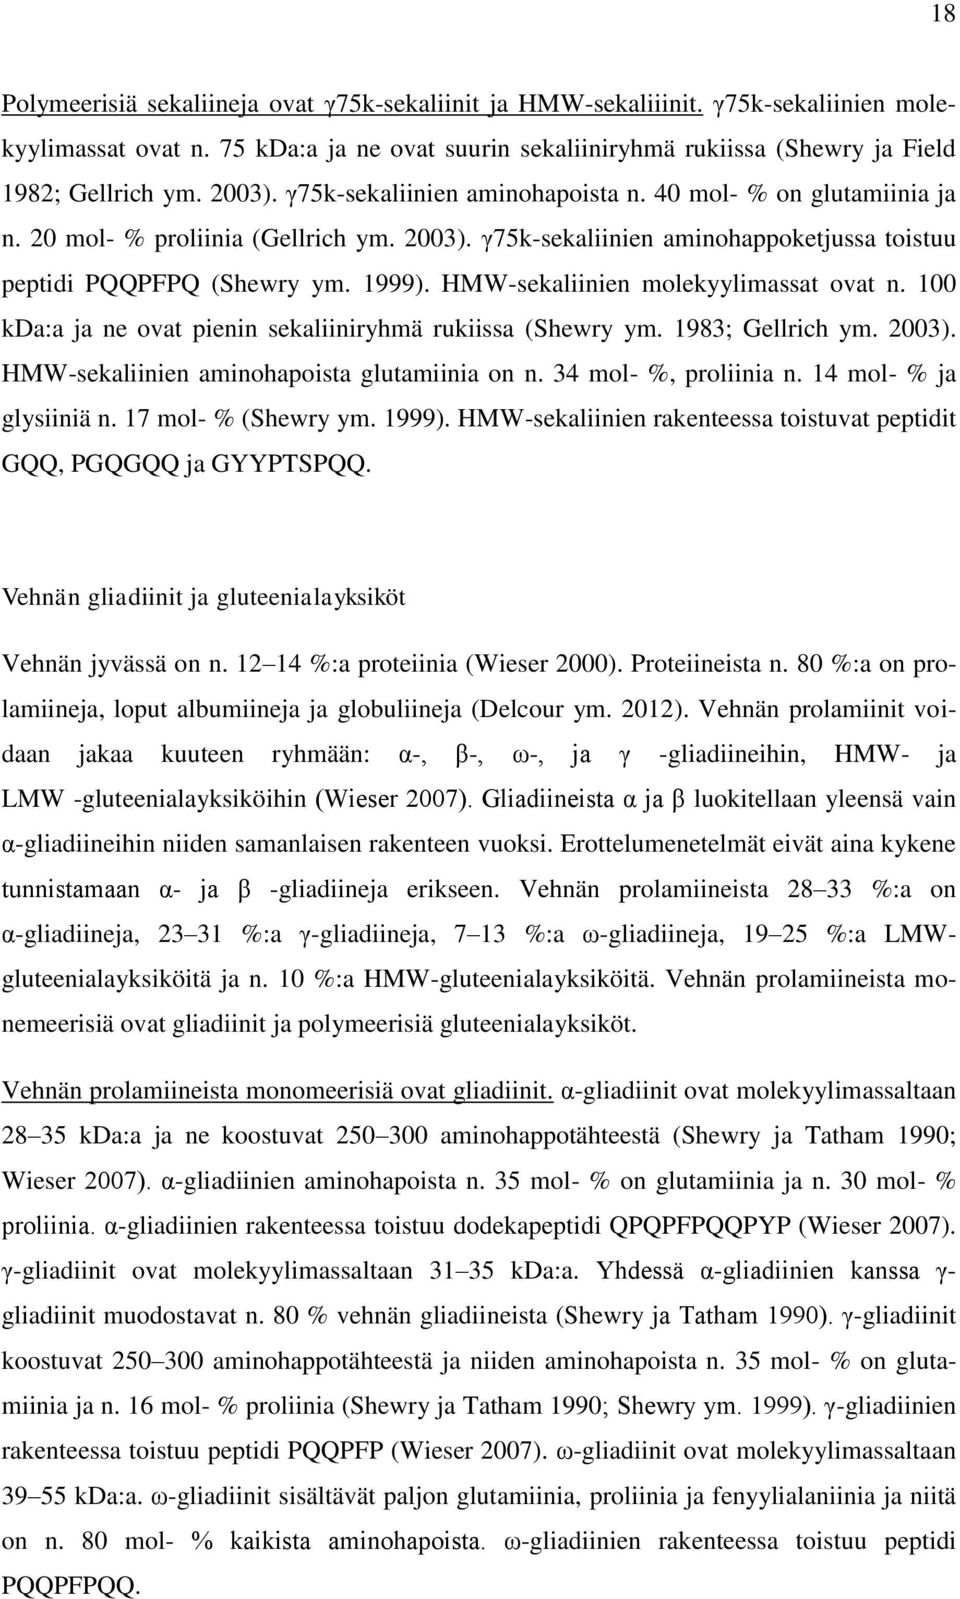 HMW-sekaliinien molekyylimassat ovat n. 100 kda:a ja ne ovat pienin sekaliiniryhmä rukiissa (Shewry ym. 1983; Gellrich ym. 2003). HMW-sekaliinien aminohapoista glutamiinia on n.